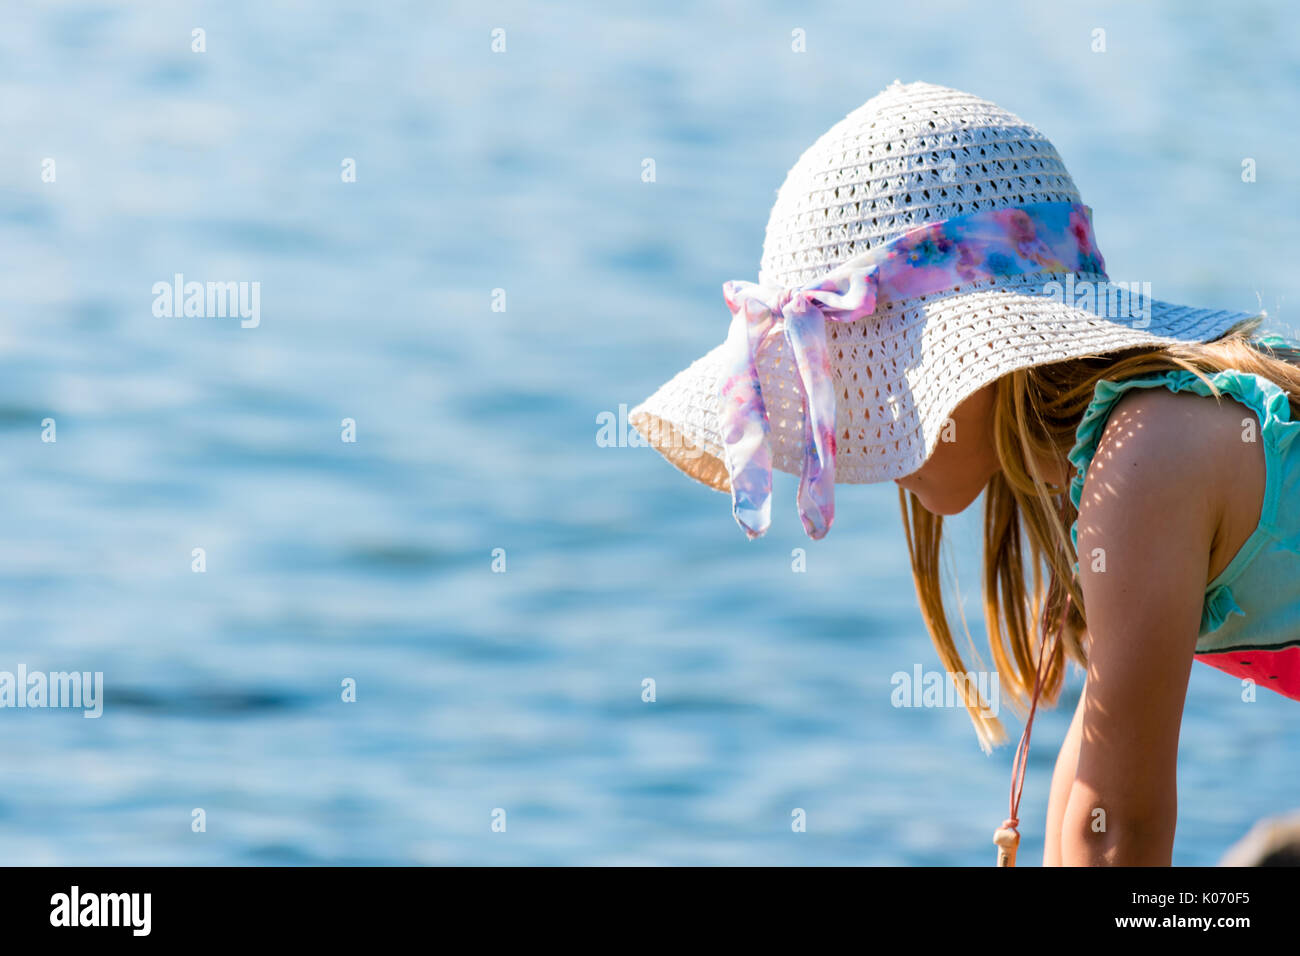 Yount hermosa chica con sombrero mirando al mar. La superficie de agua sobre fondo liso. Bonita escena soleado de verano. Foto de stock